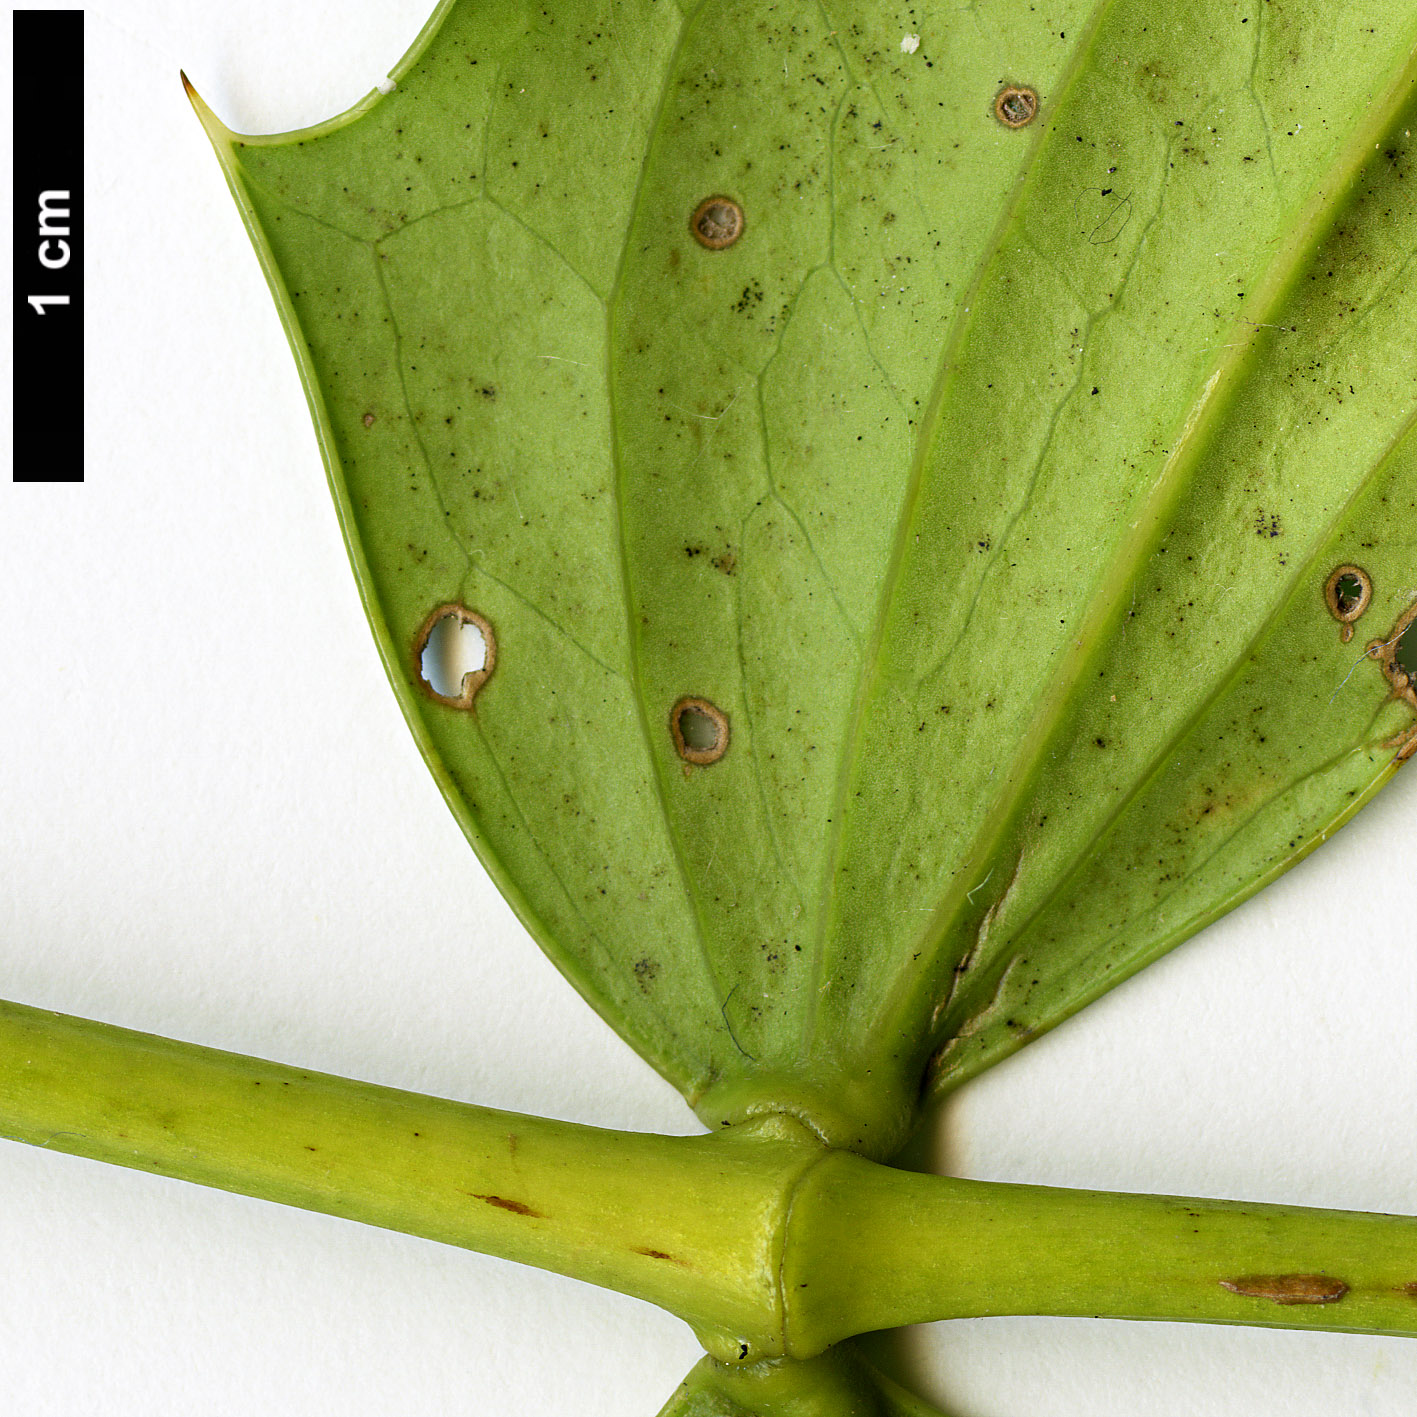 High resolution image: Family: Berberidaceae - Genus: Mahonia - Taxon: napaulensis